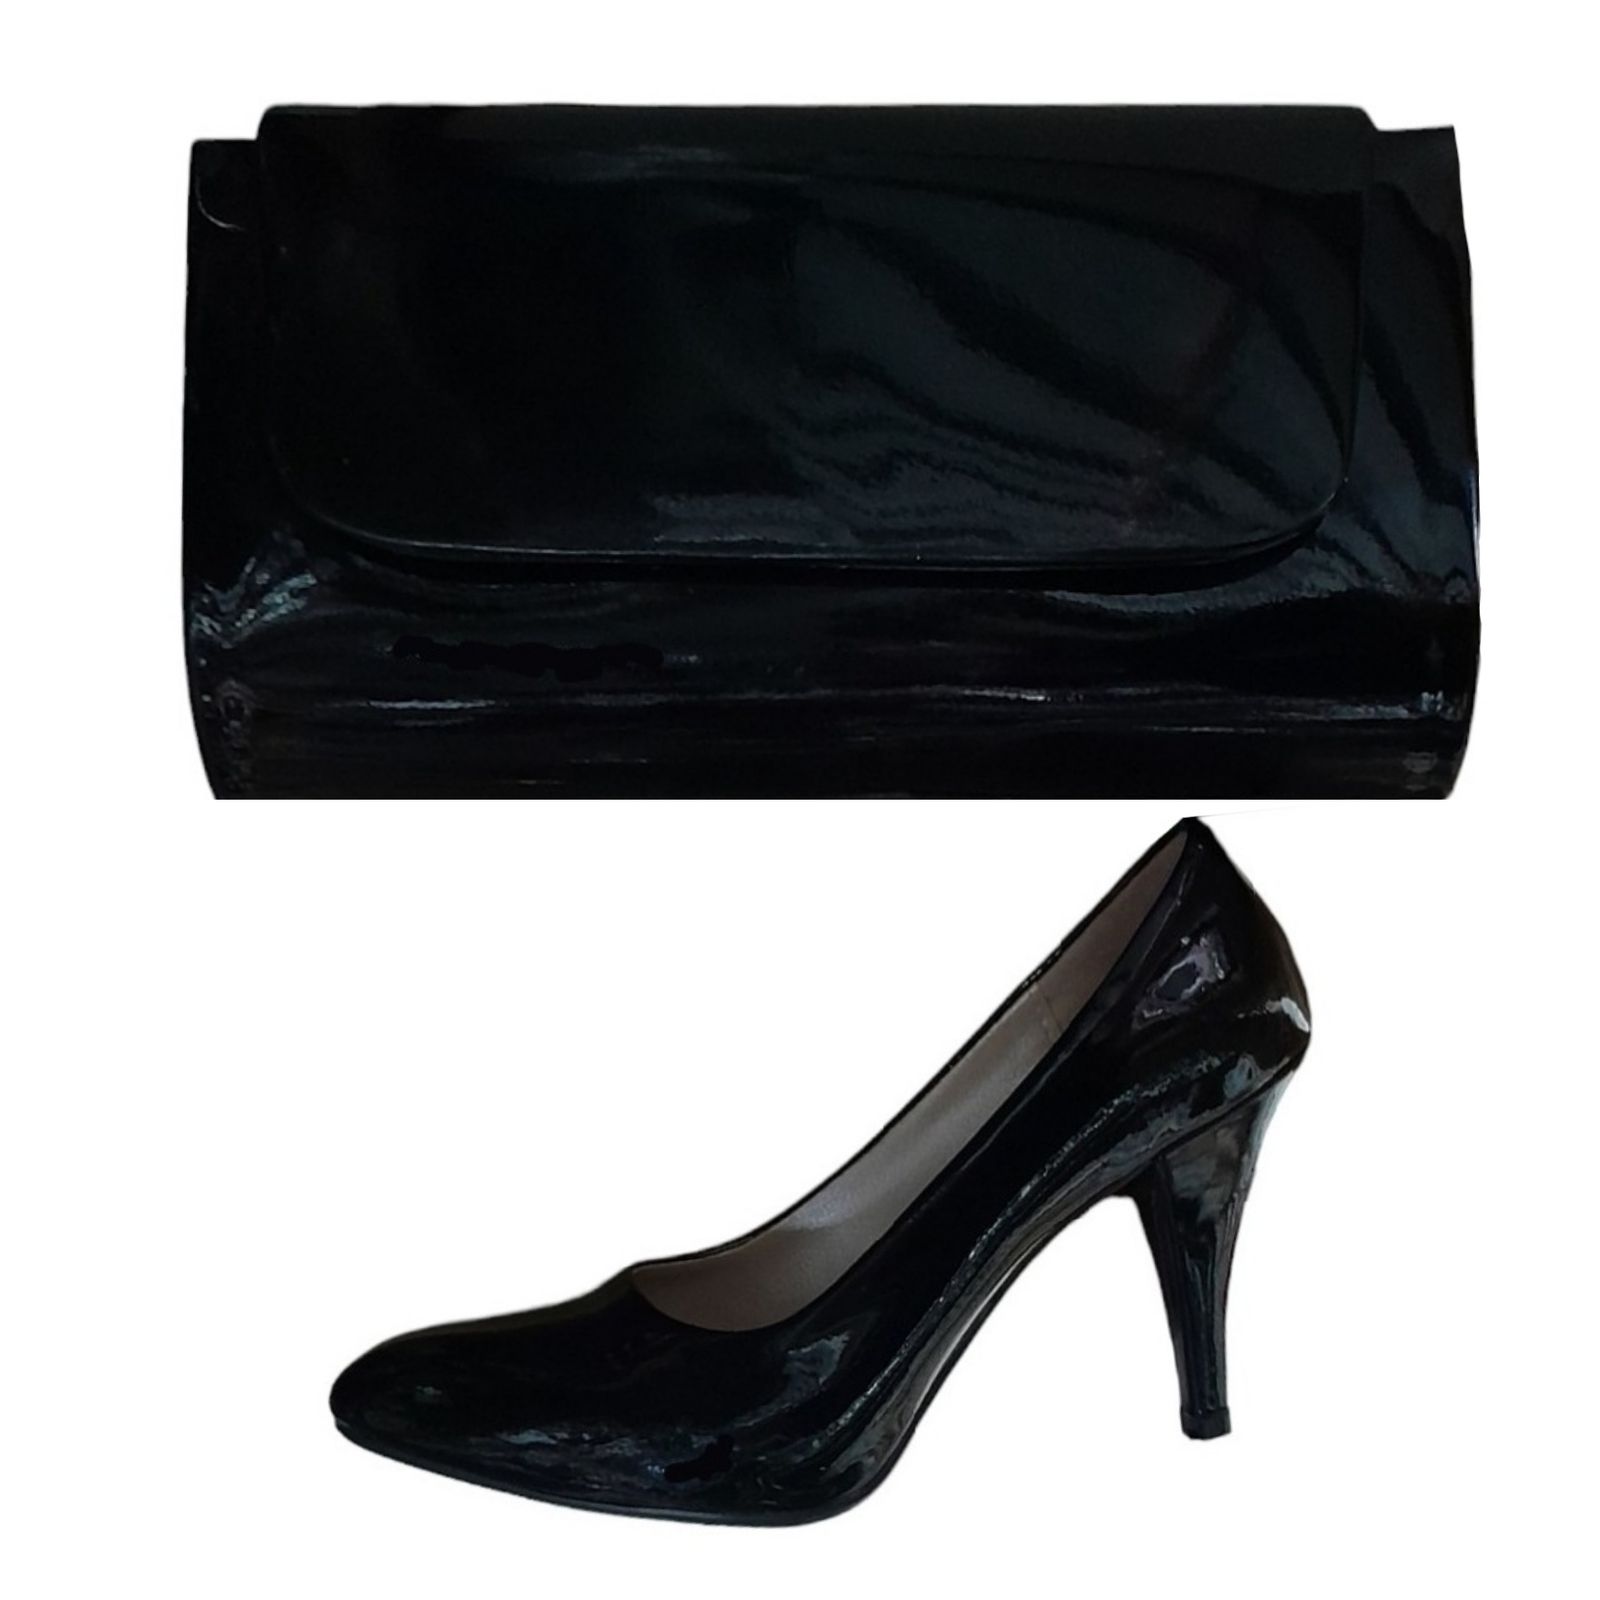 ست کیف و کفش زنانه مدل لودشکا ورنی 7cm -  - 1